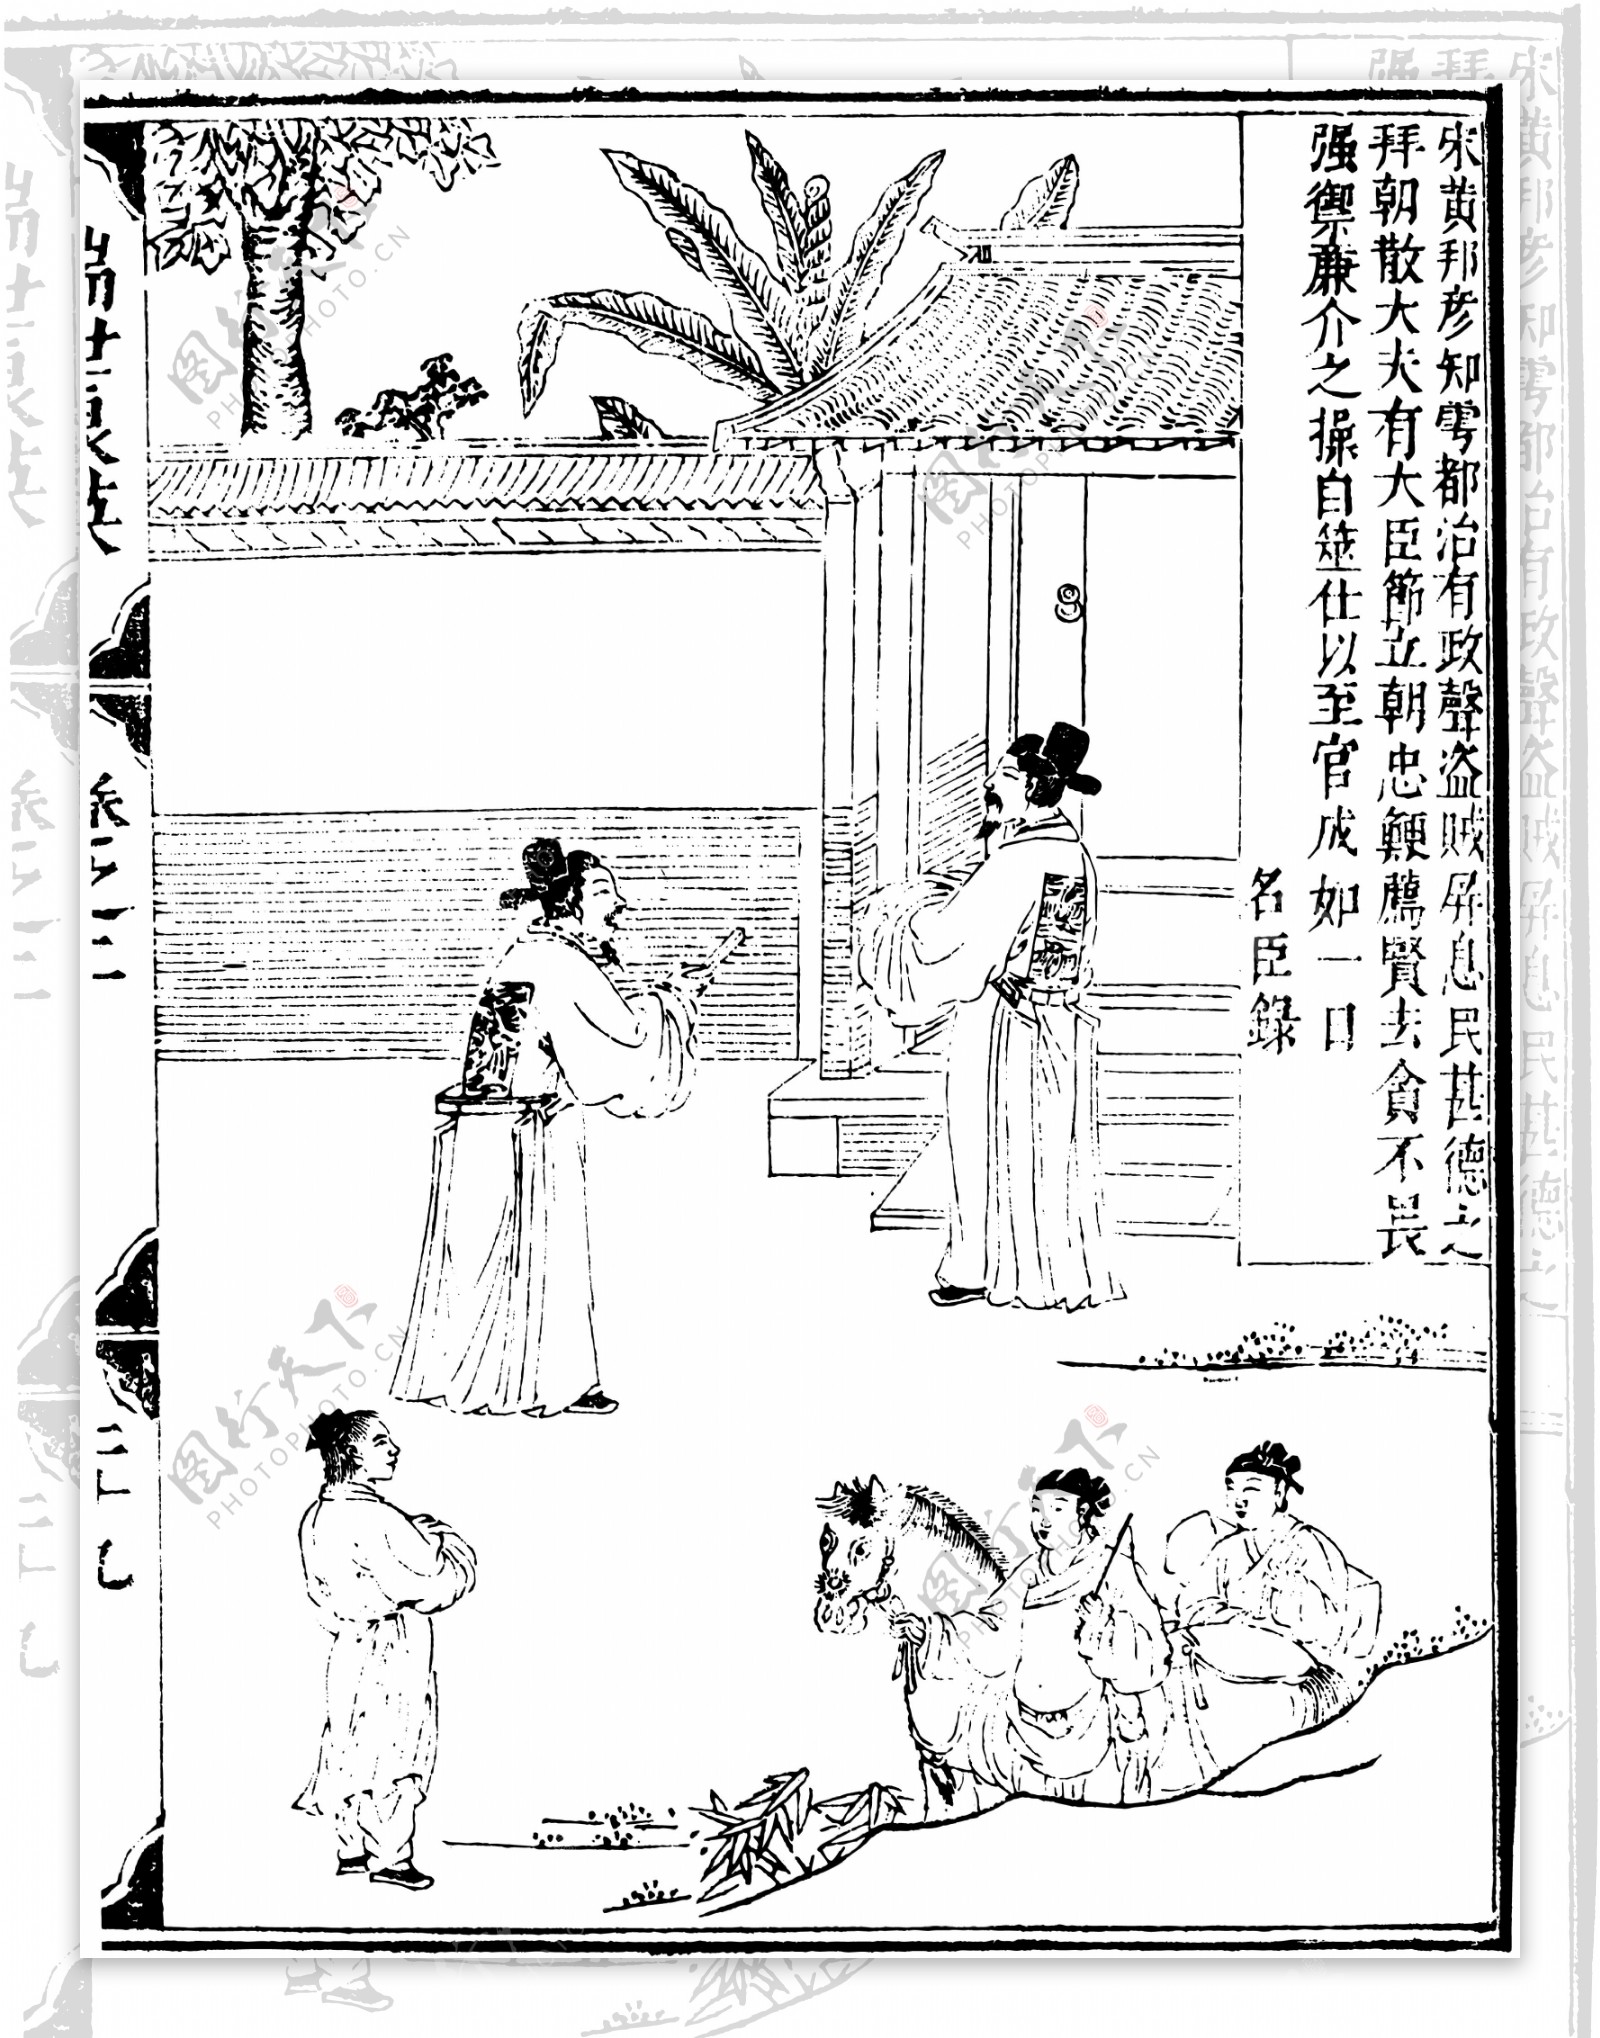 瑞世良英木刻版画中国传统文化03